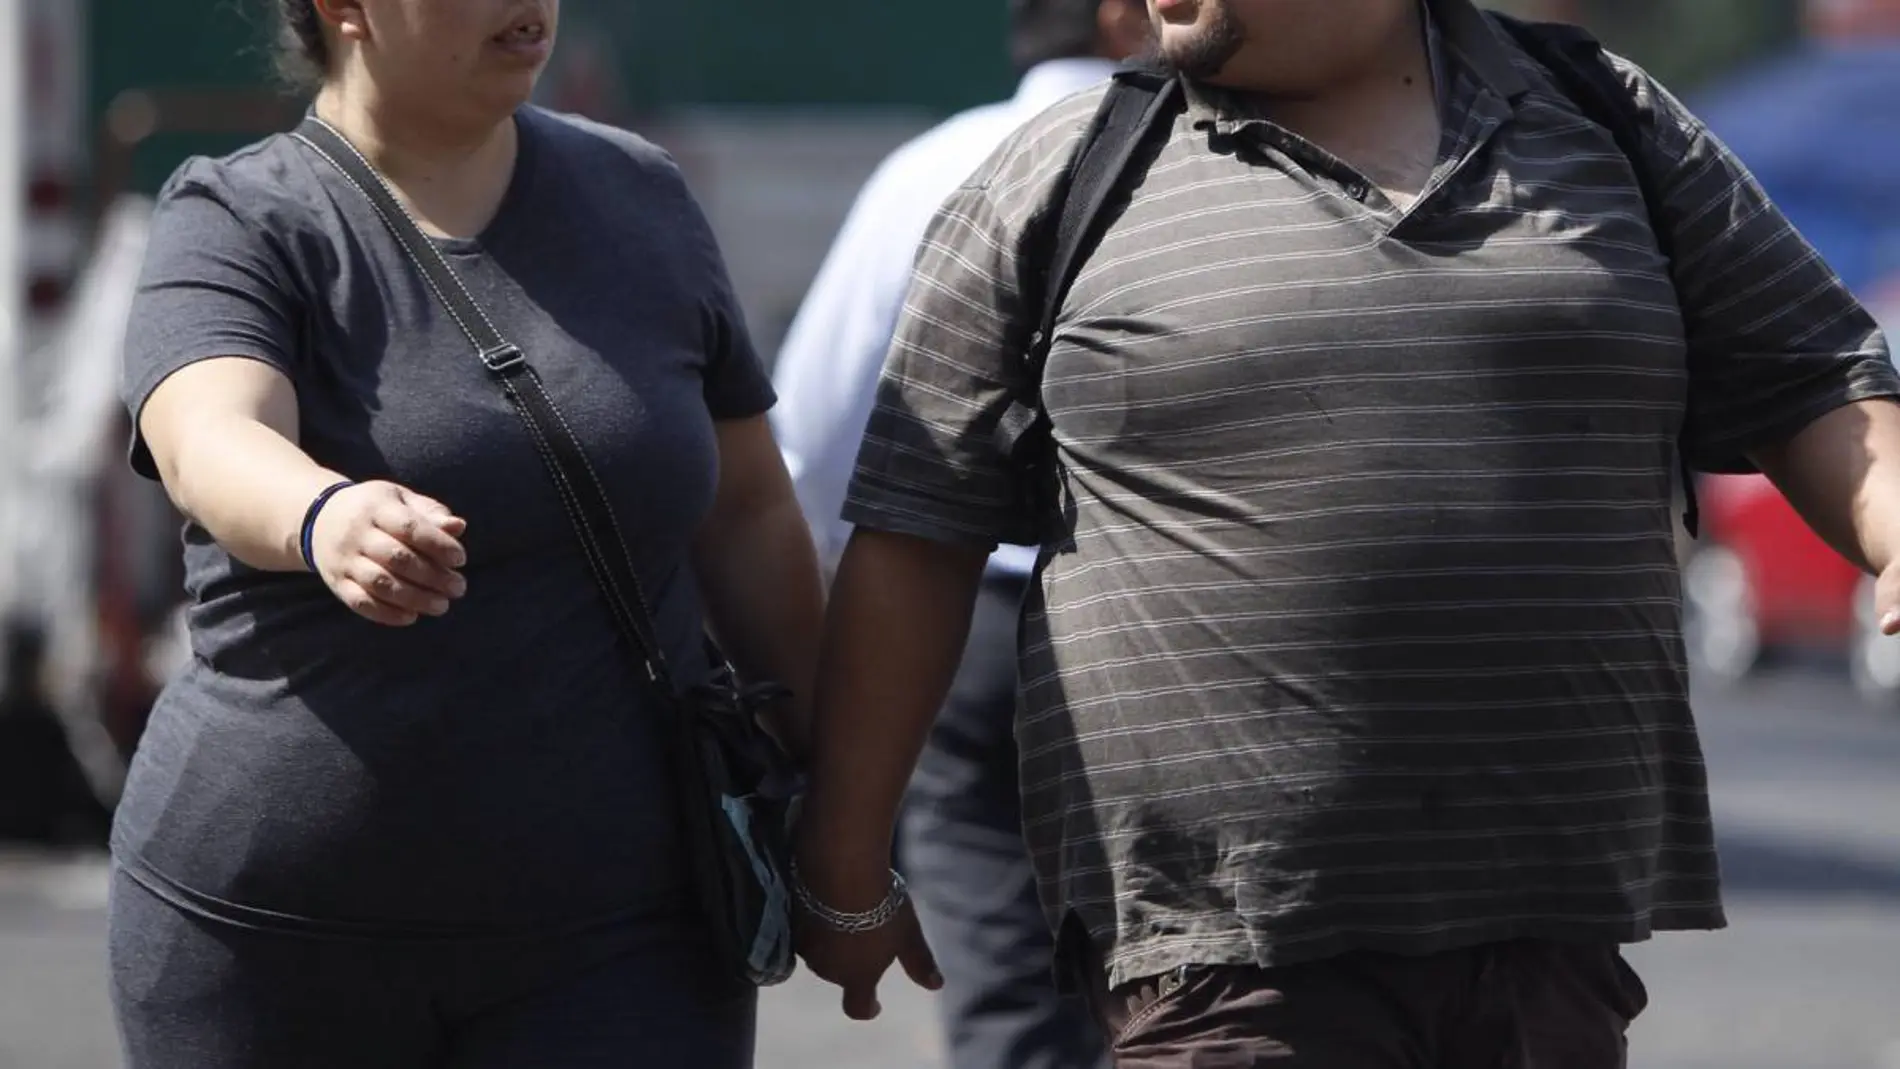 Dos personas con obesidad